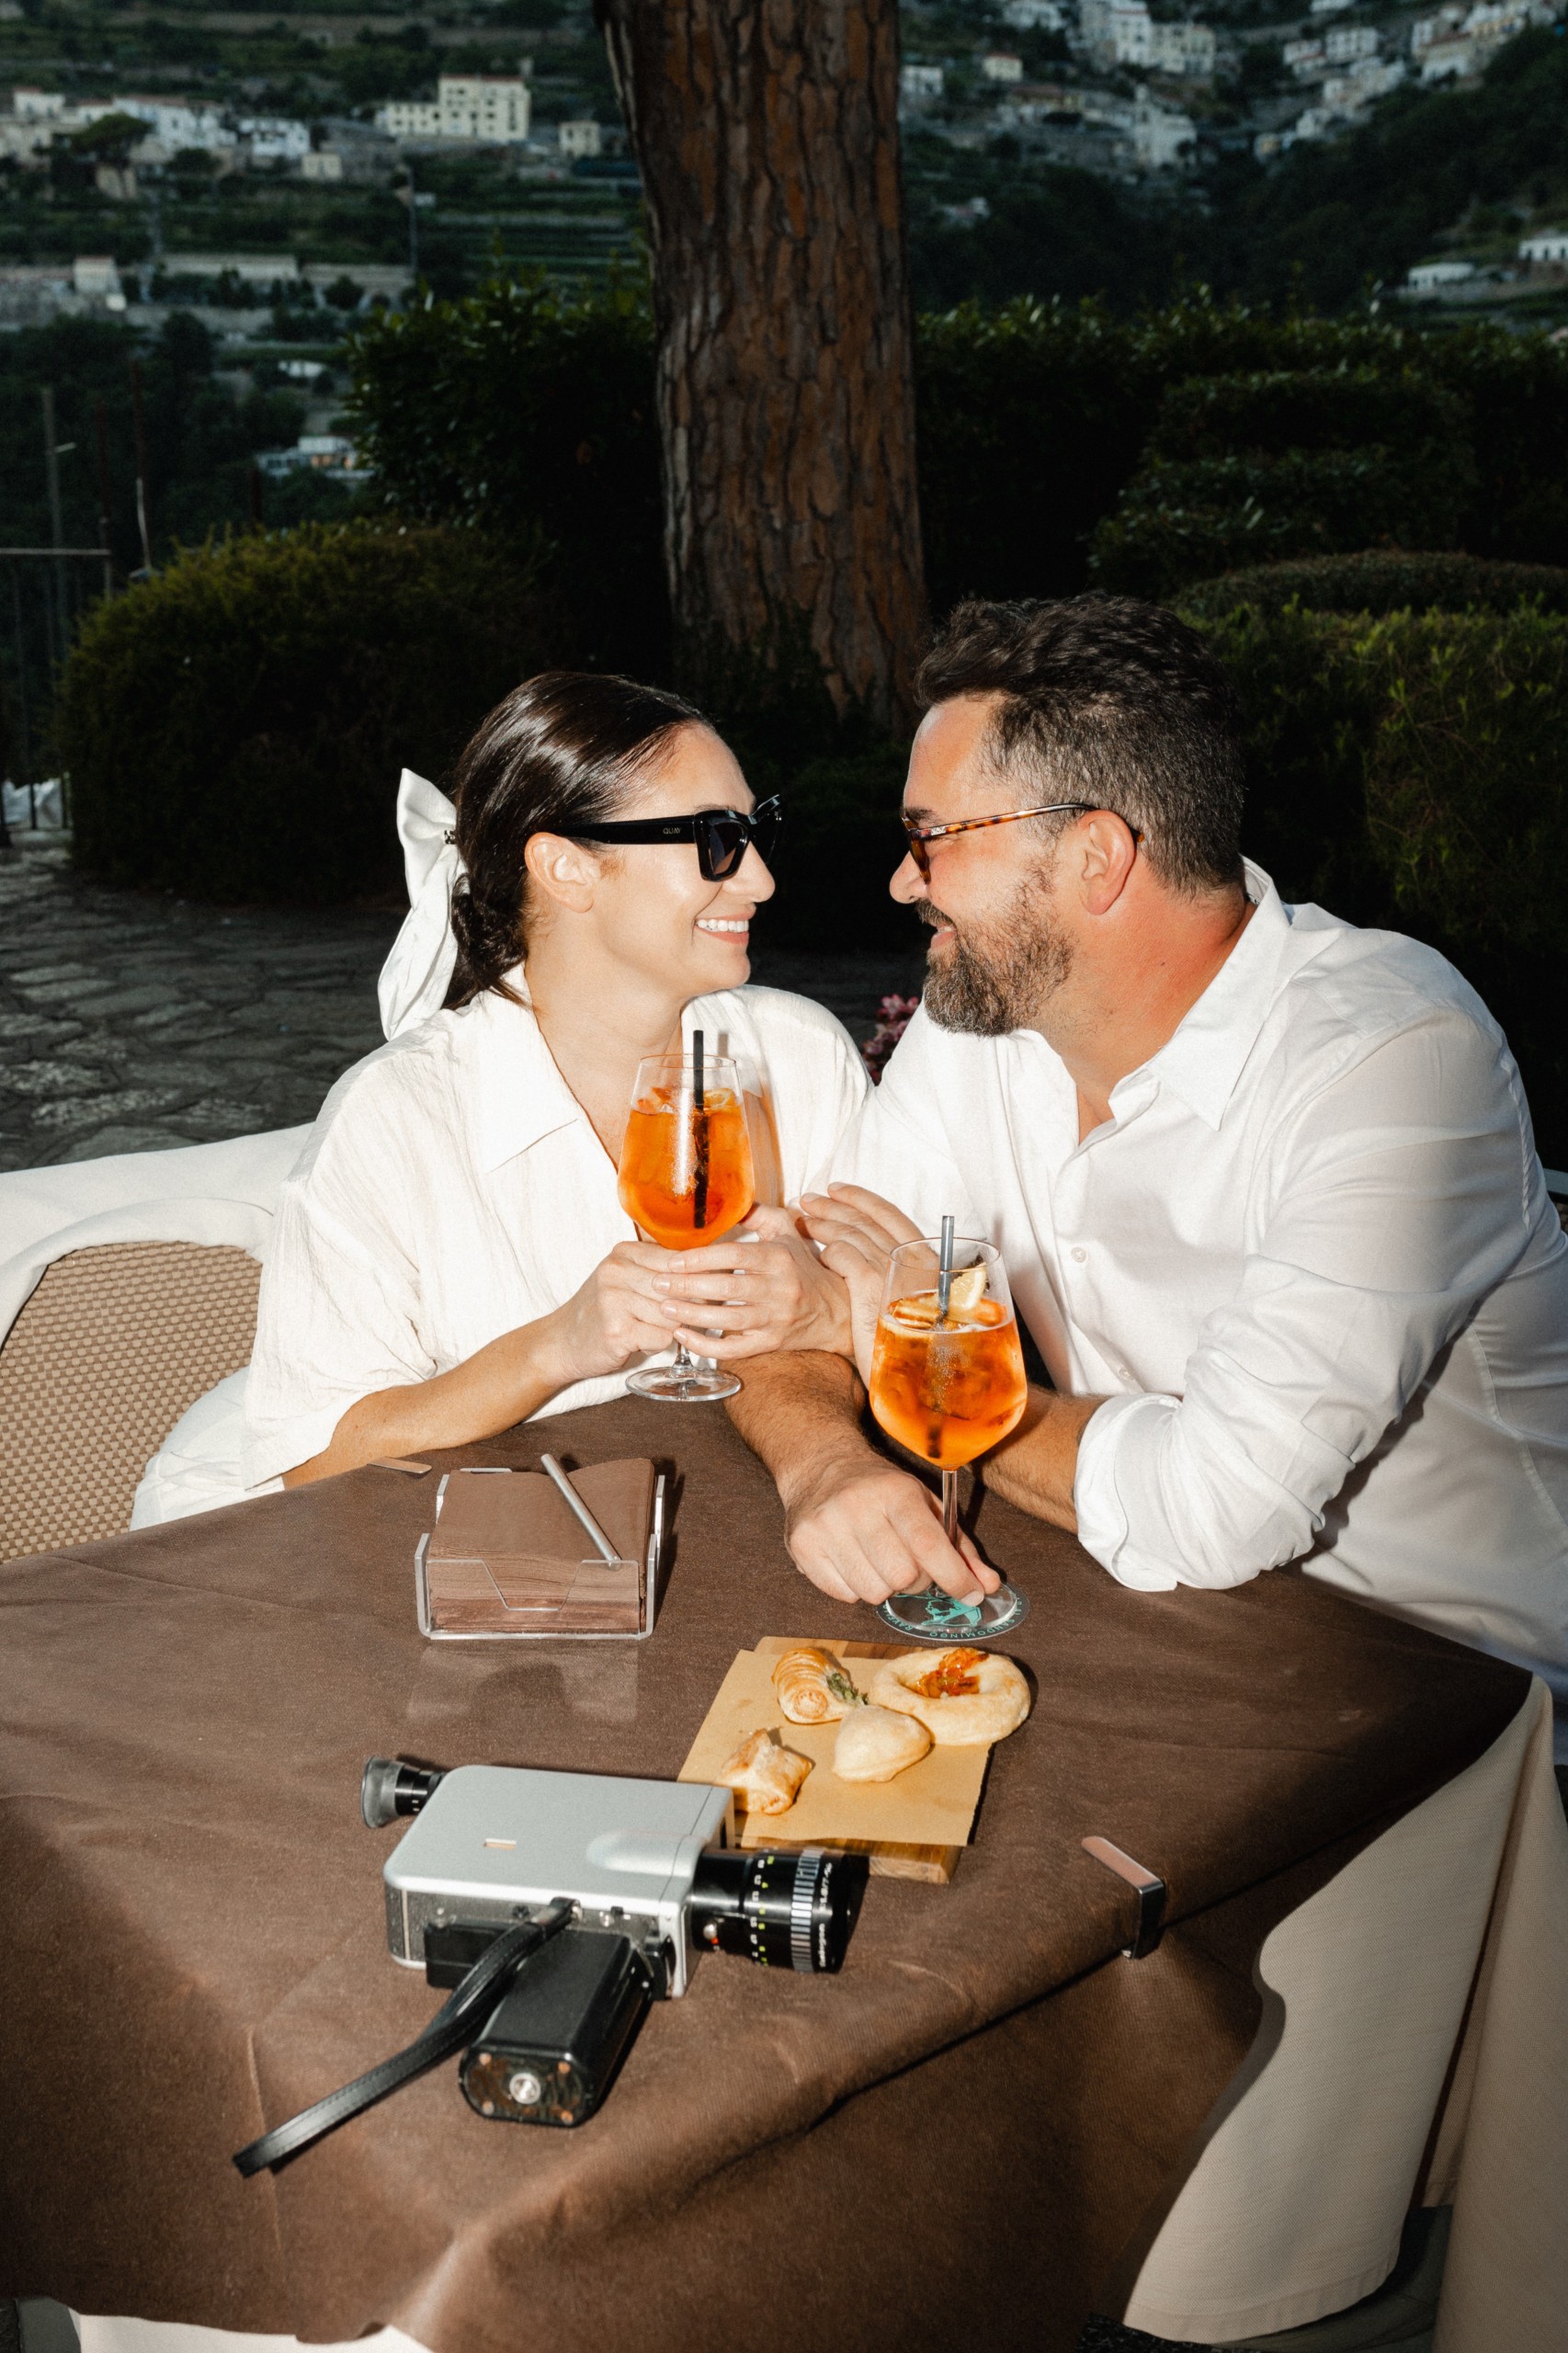 Couple enjoying Aperol Spritz at a Italian Café